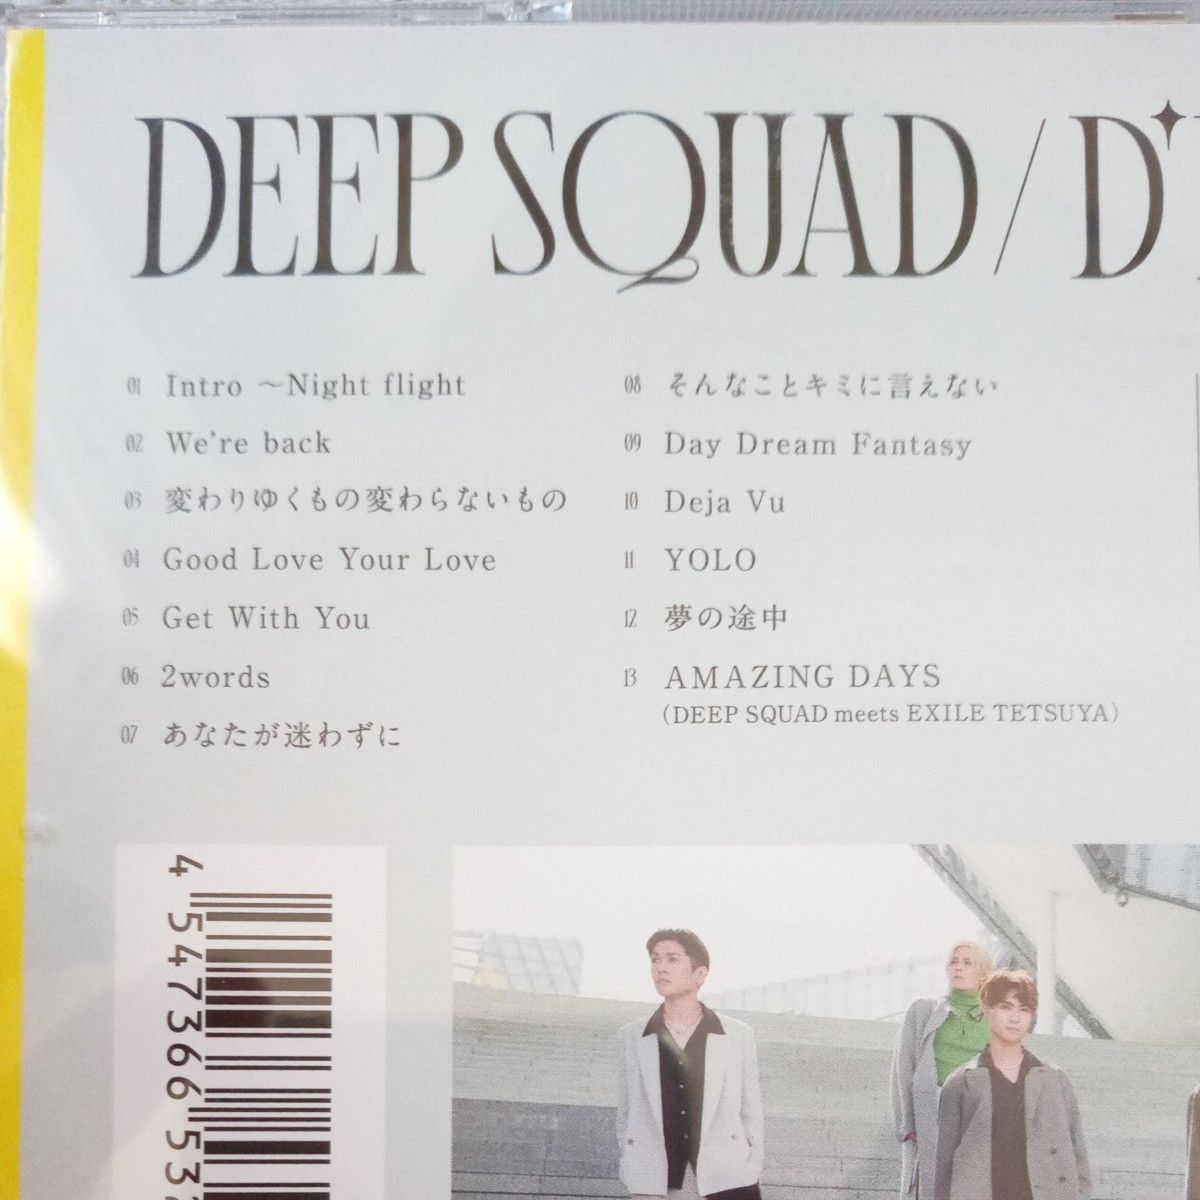 通常盤 DEEP SQUAD CD/DPARTURE 21/12/15発売 オリコン加盟店